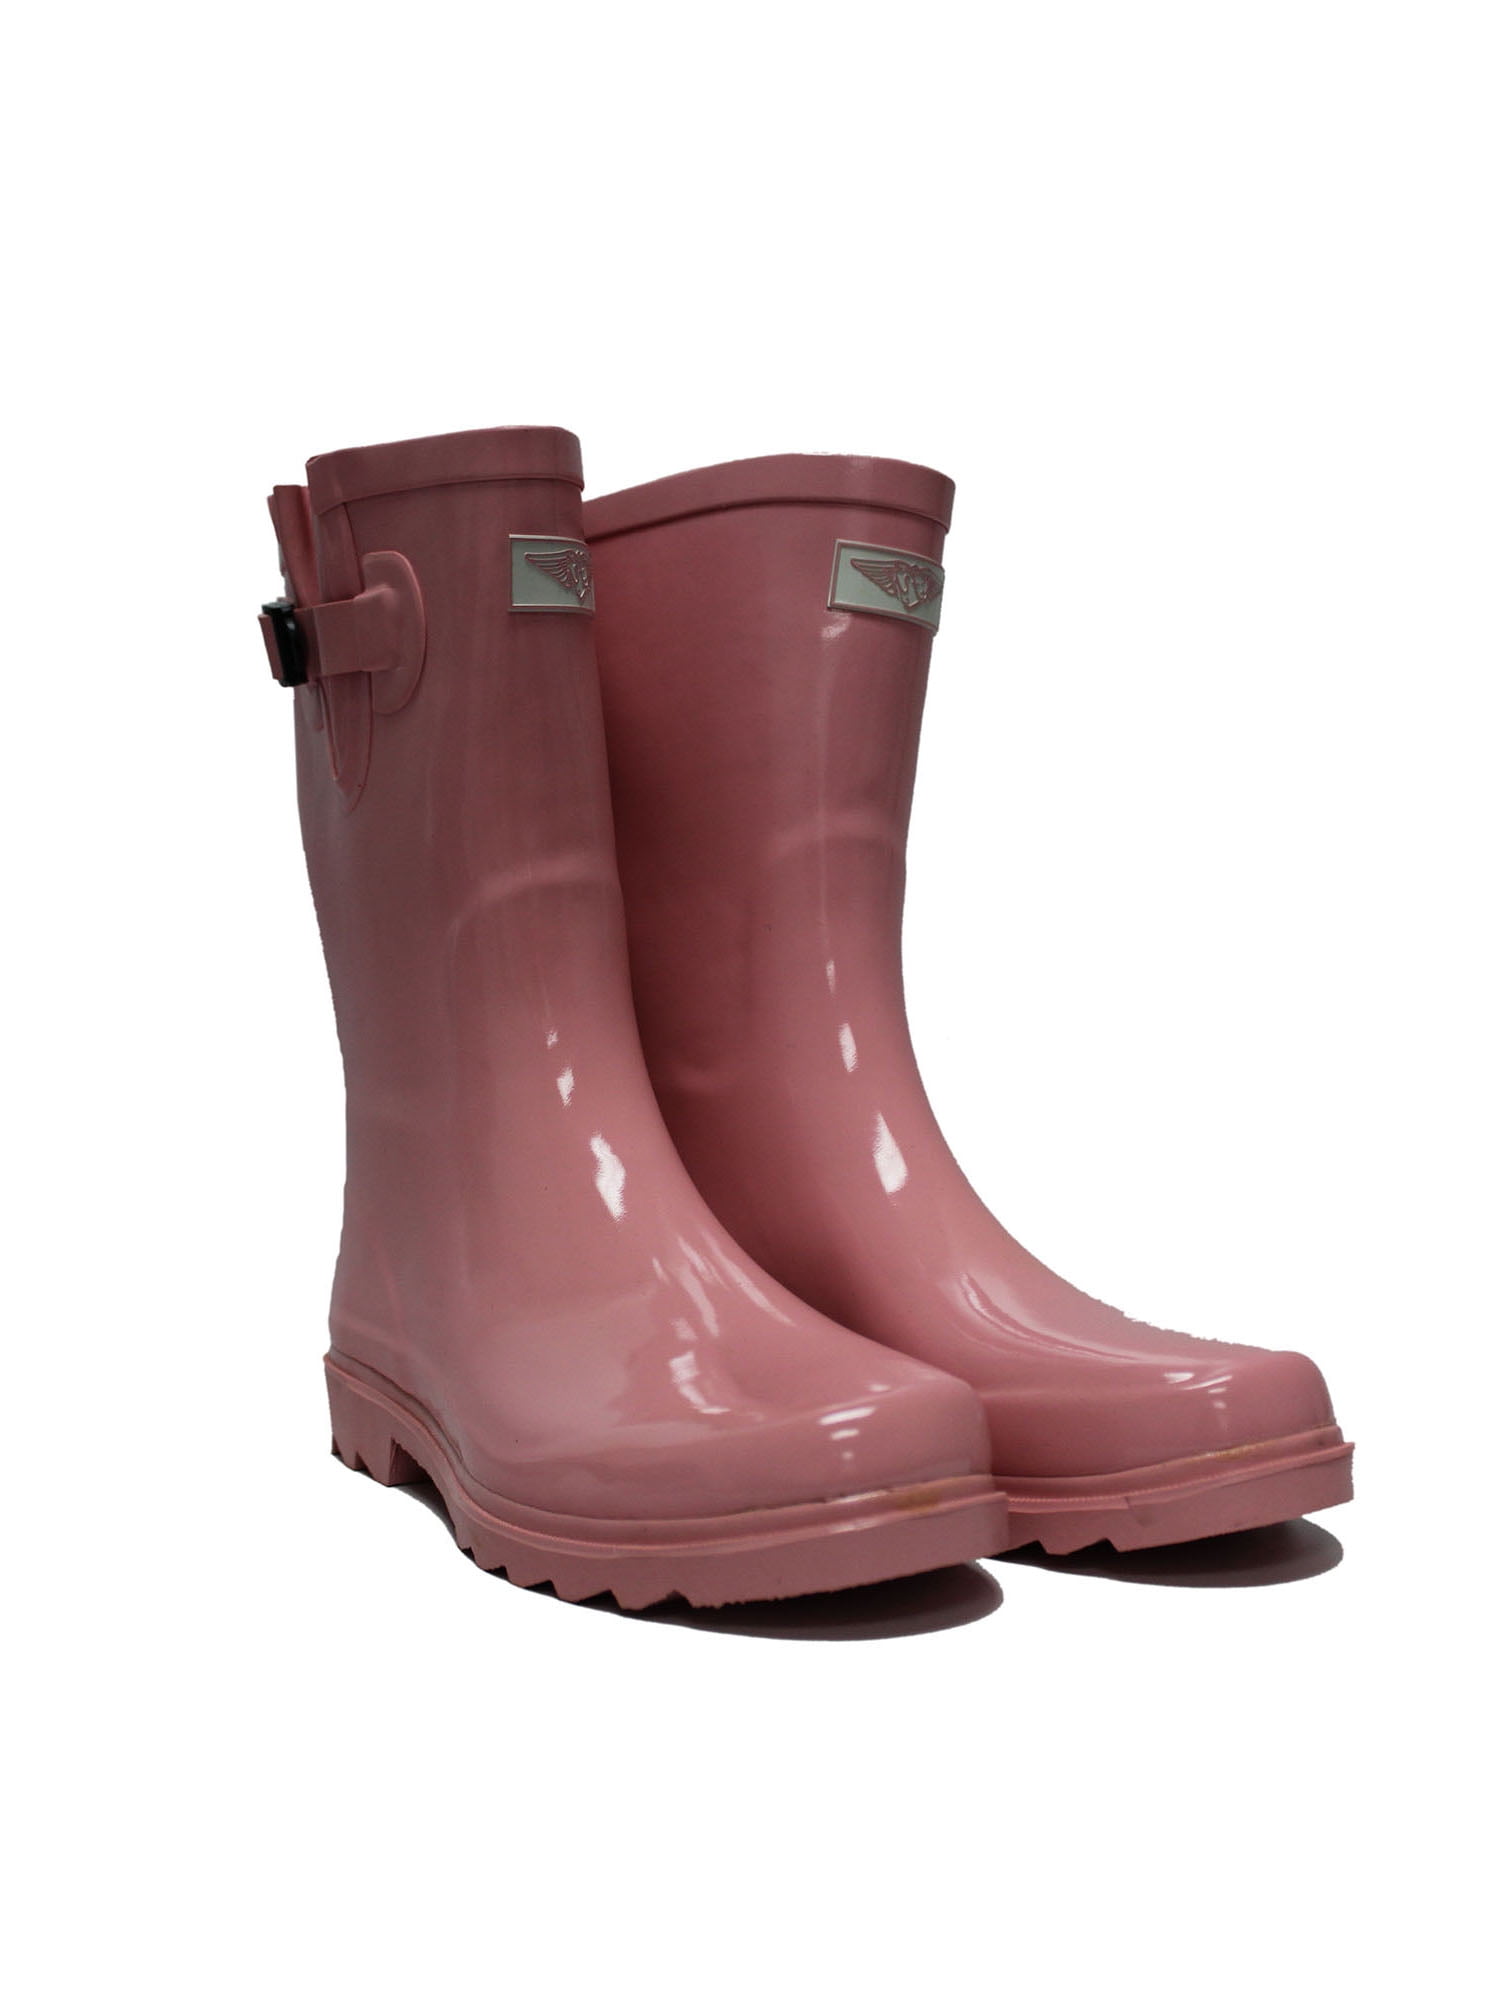 Waterproof Rubber Women Rain Boots Anti 